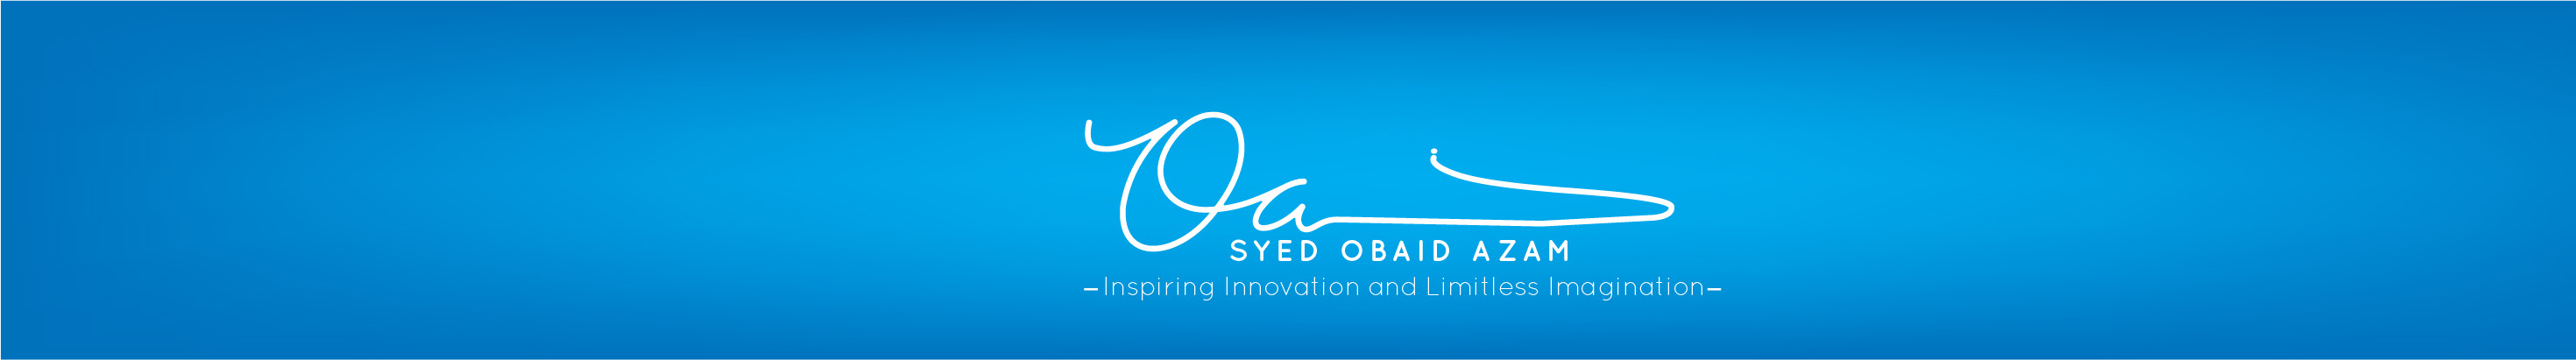 Banner profilu uživatele Syed Obaid Azam